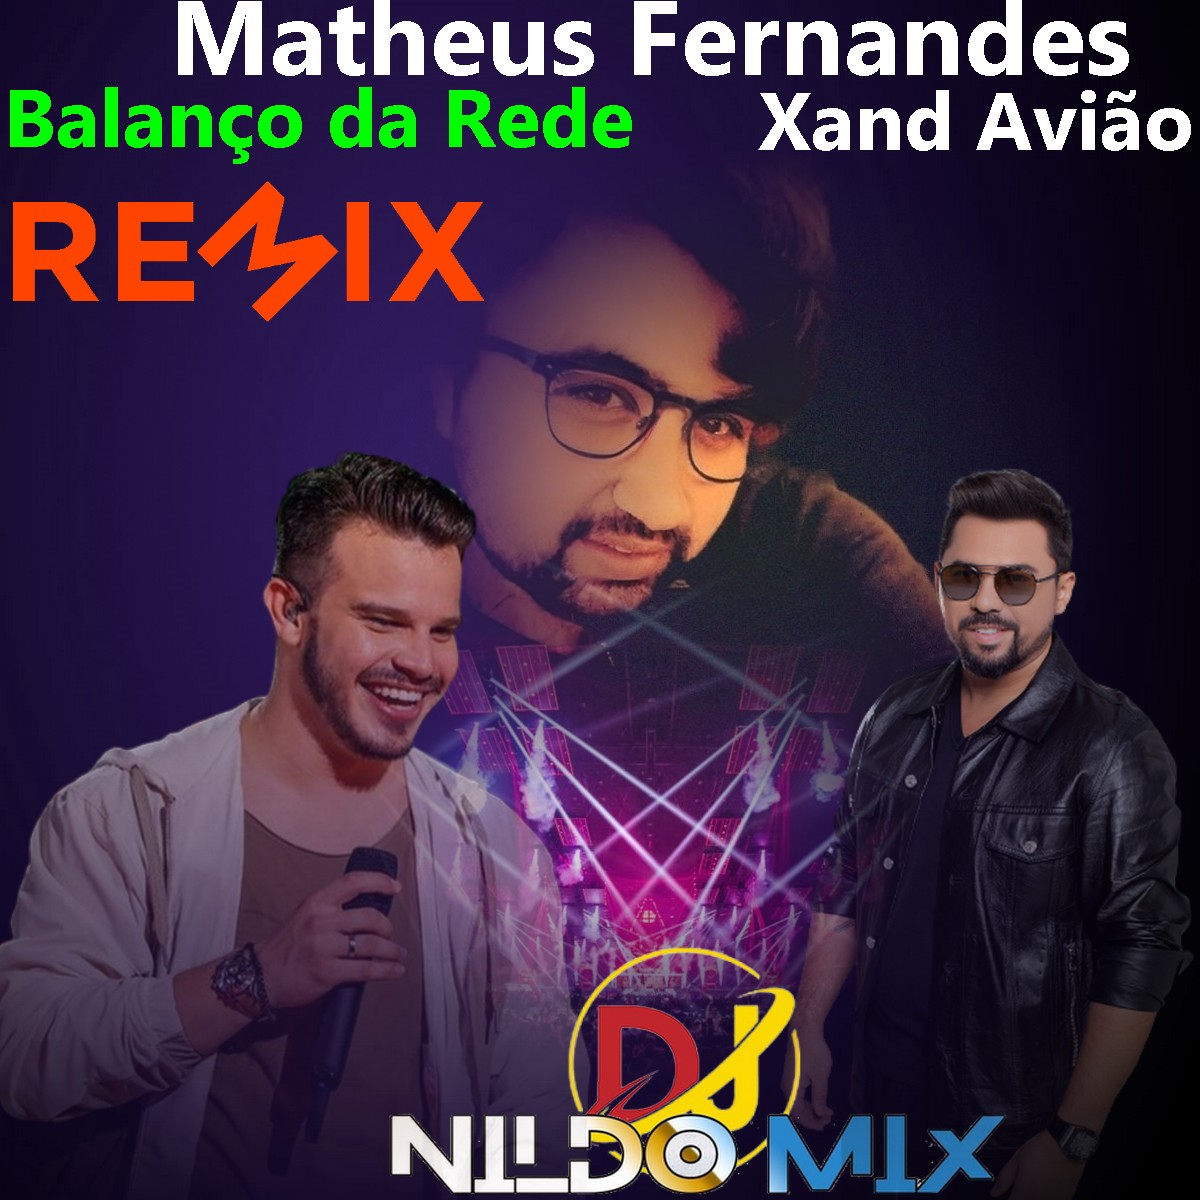 Matheus Fernandes e Xand Avião Balanço da Rede Remix Dj Nildo Mix